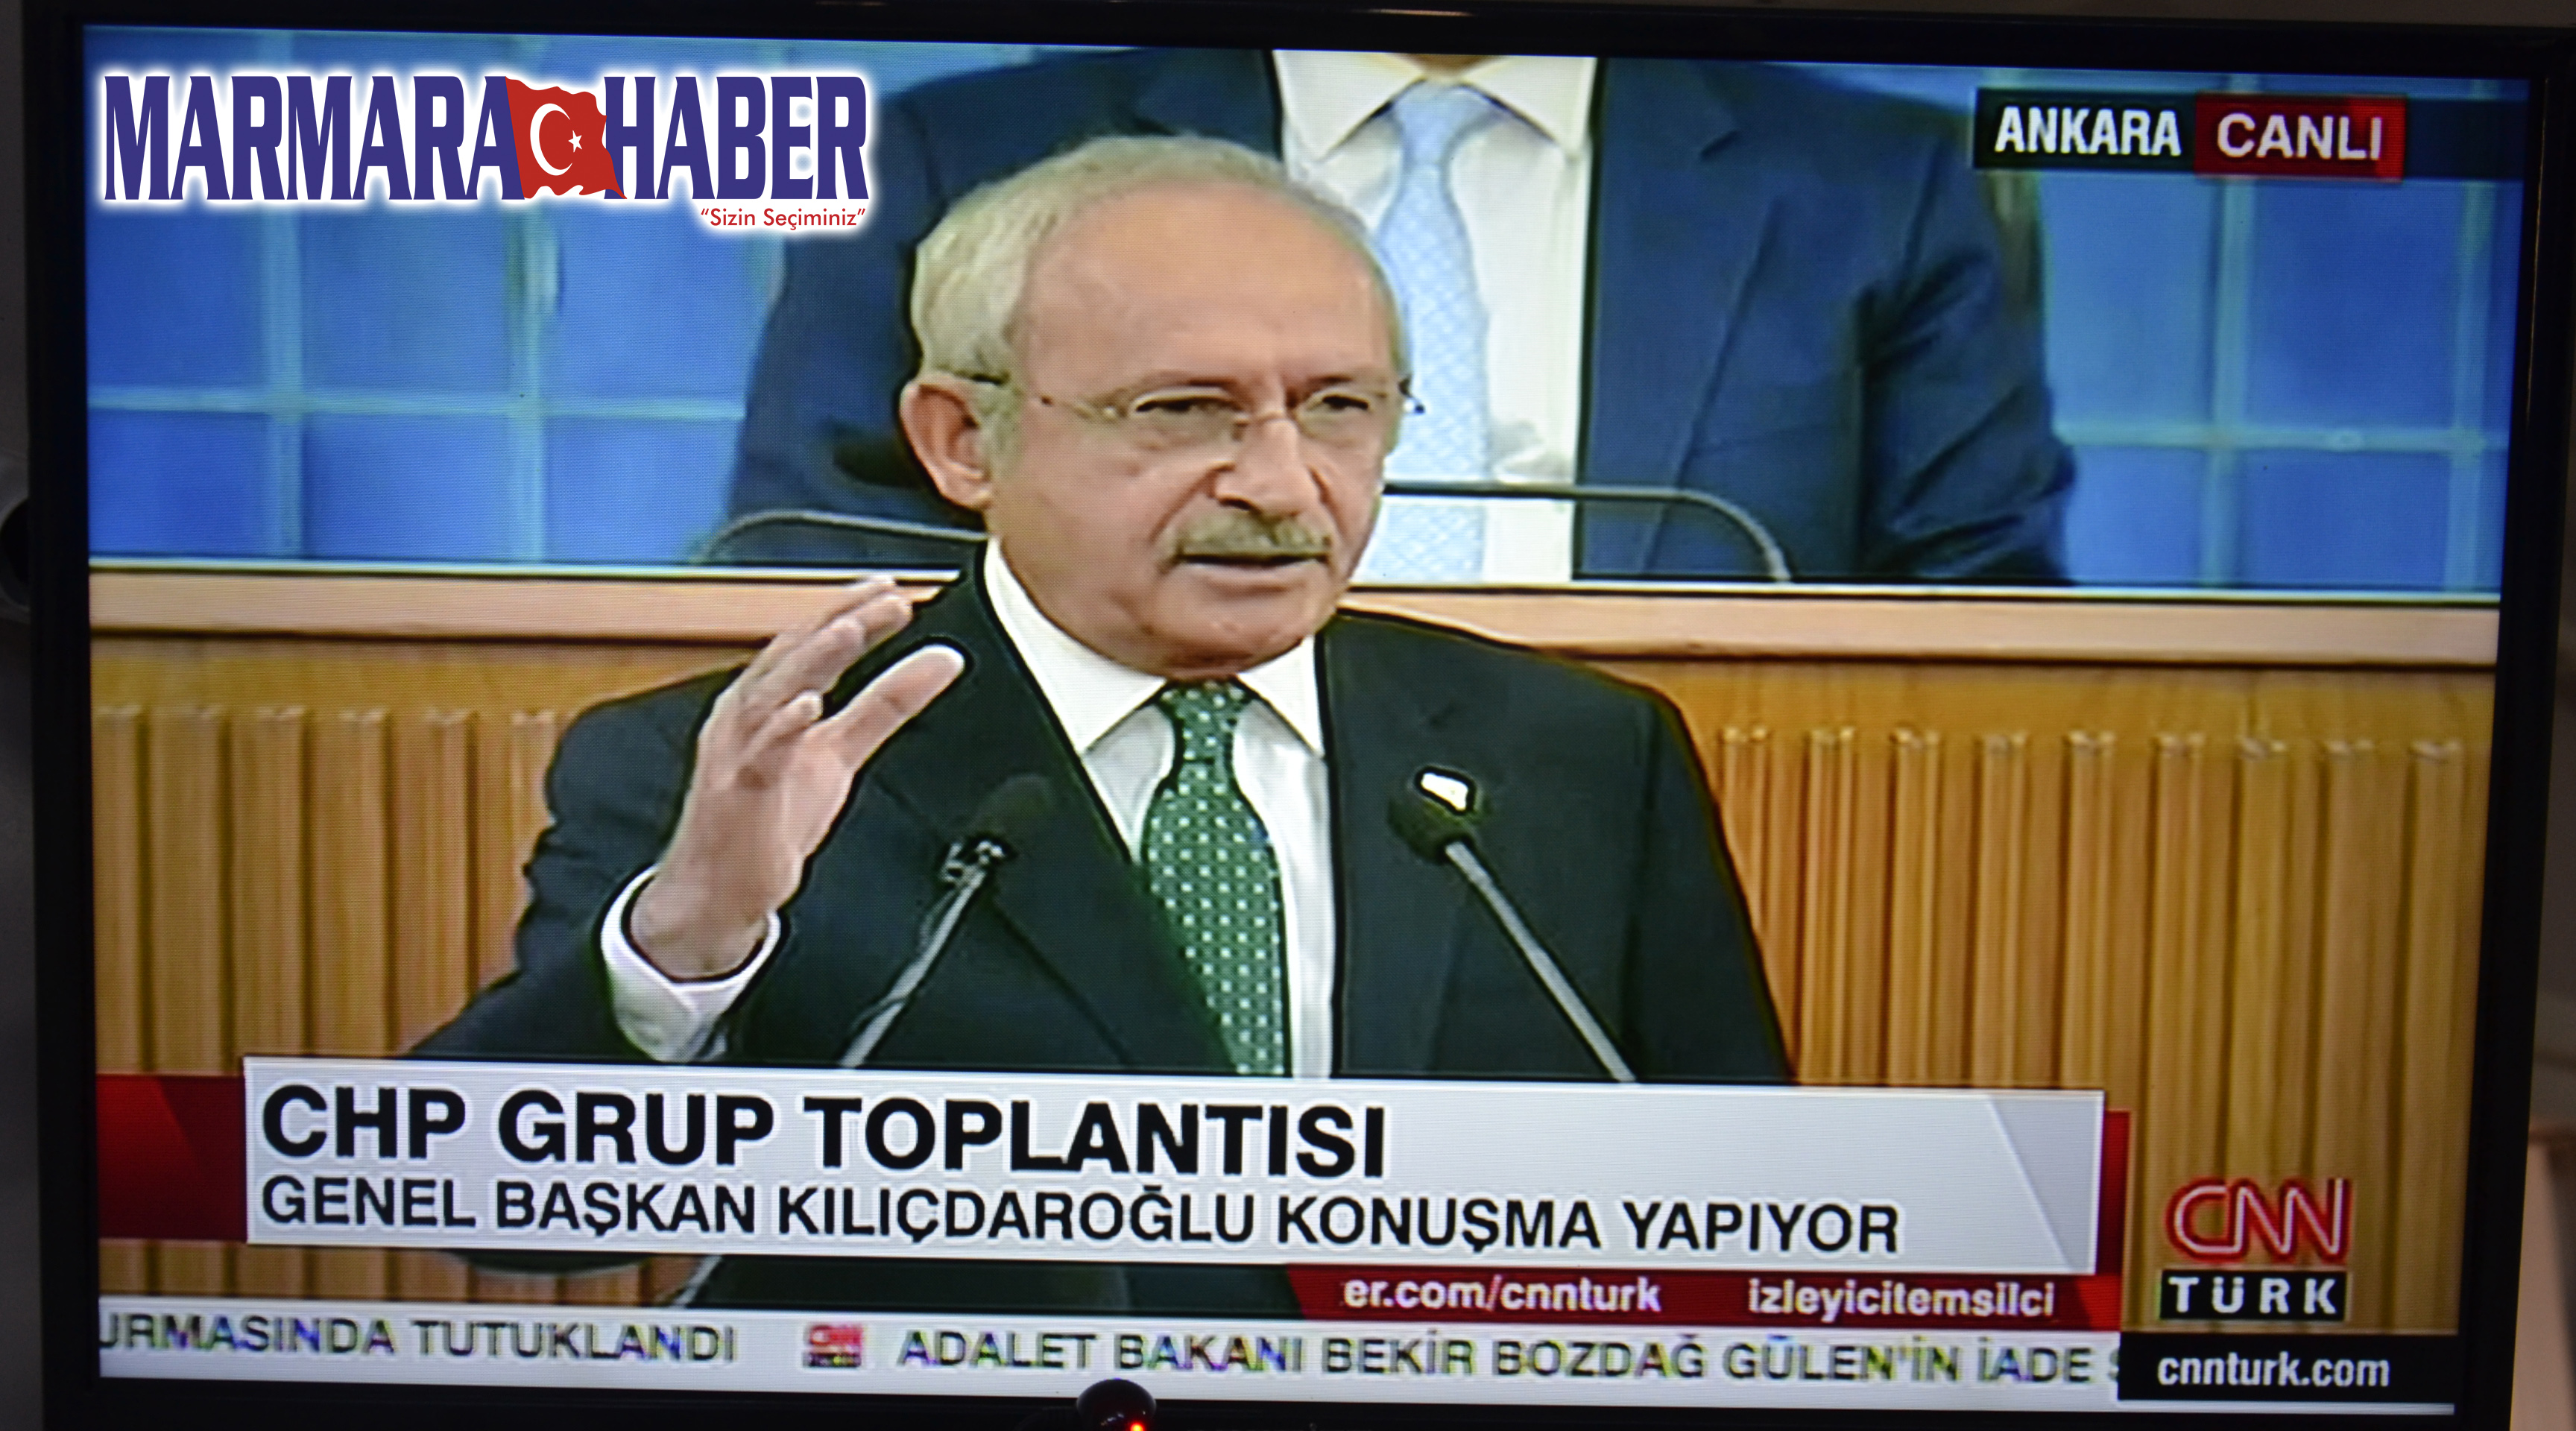 Kapaklı-Saray yolunun 7 yıldır bitirilemediğini söyleyen Kılıçdaroğlu:  Yapamıyorsanız verin biz yapalım